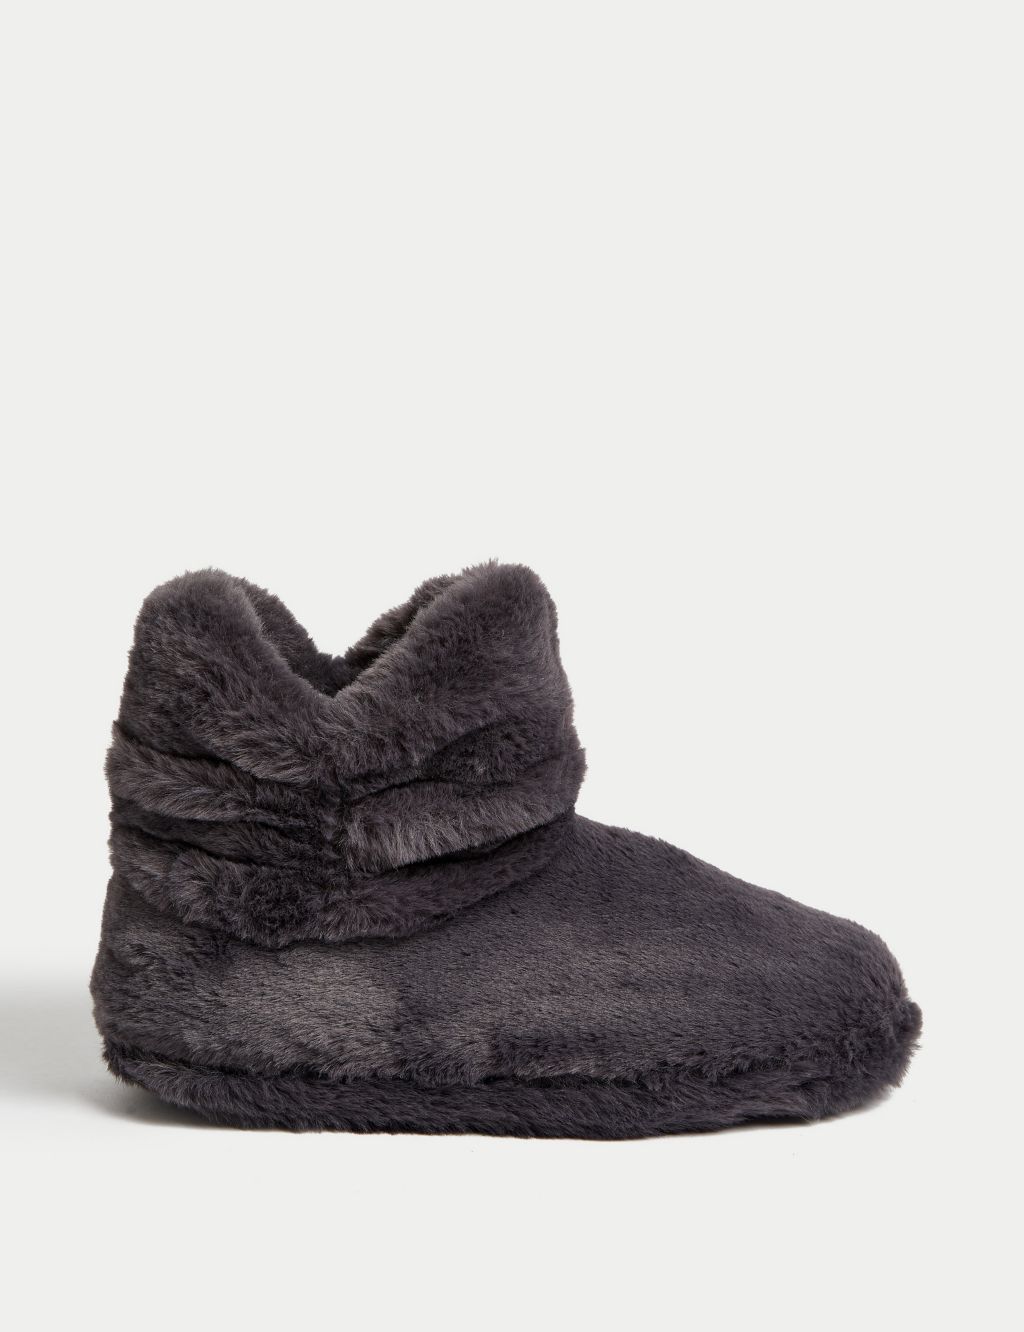 Faux Fur Slipper Boots image 1